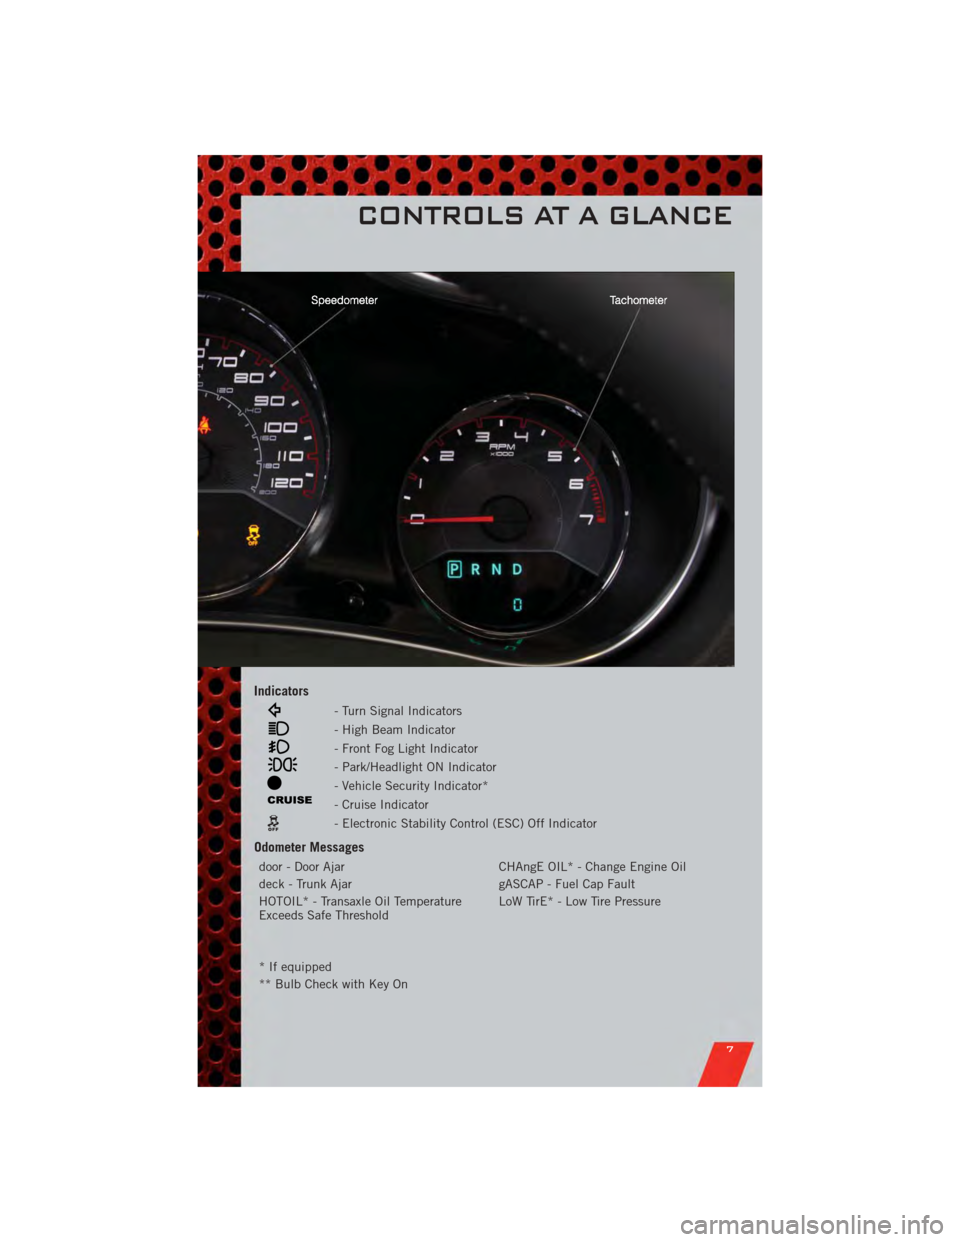 DODGE AVENGER 2011 2.G User Guide Indicators
- Turn Signal Indicators
- High Beam Indicator
- Front Fog Light Indicator
- Park/Headlight ON Indicator
- Vehicle Security Indicator*
- Cruise Indicator
- Electronic Stability Control (ESC